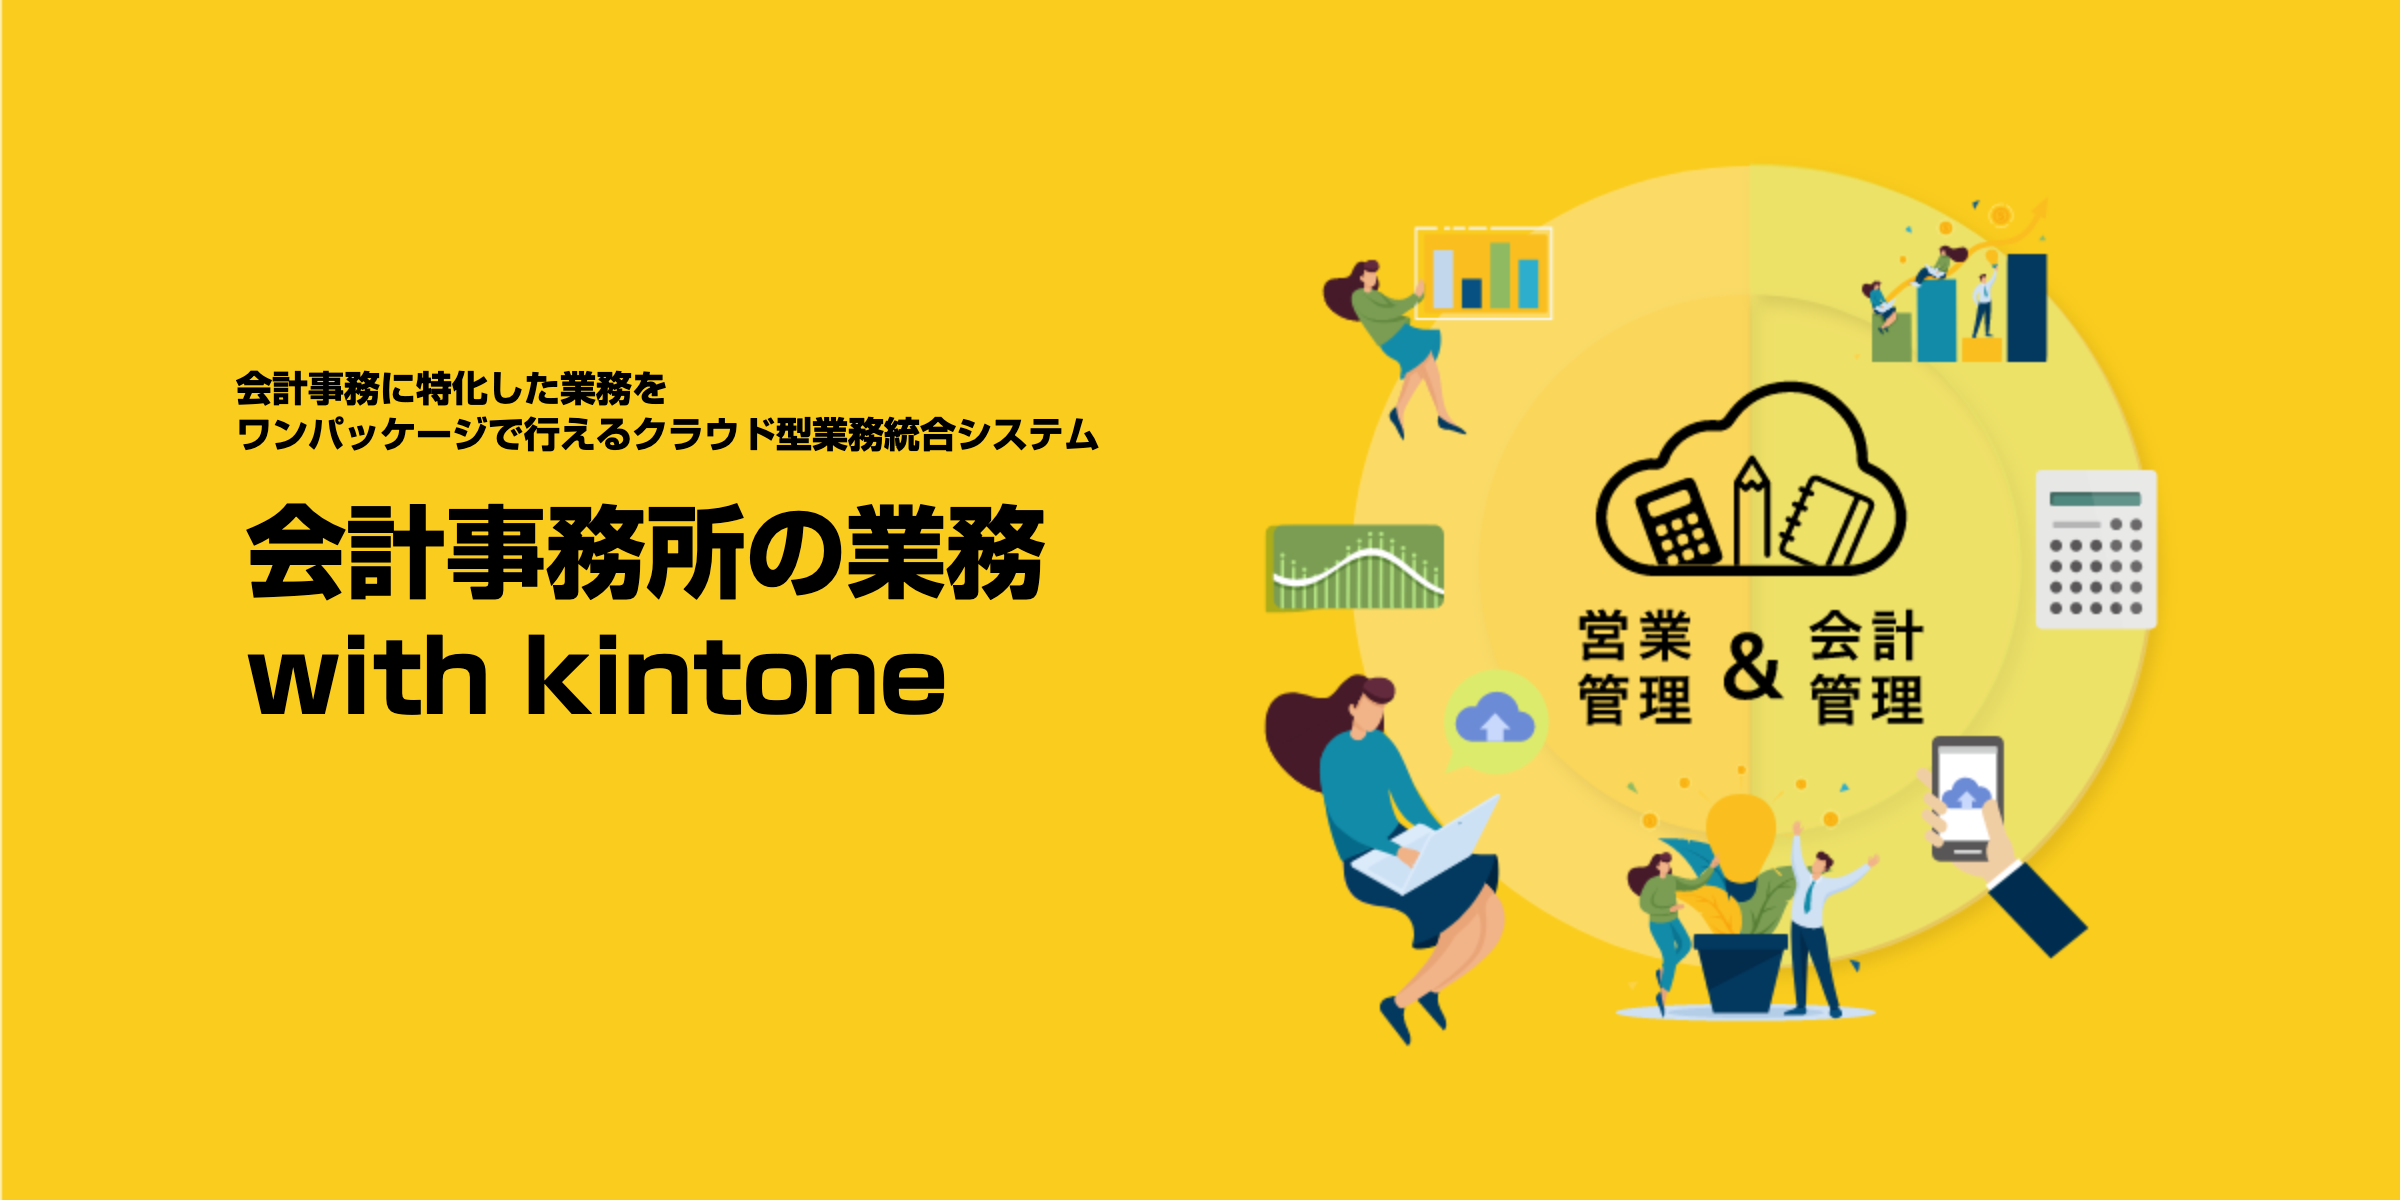 会計事務所の業務 with kintone でメイン画像